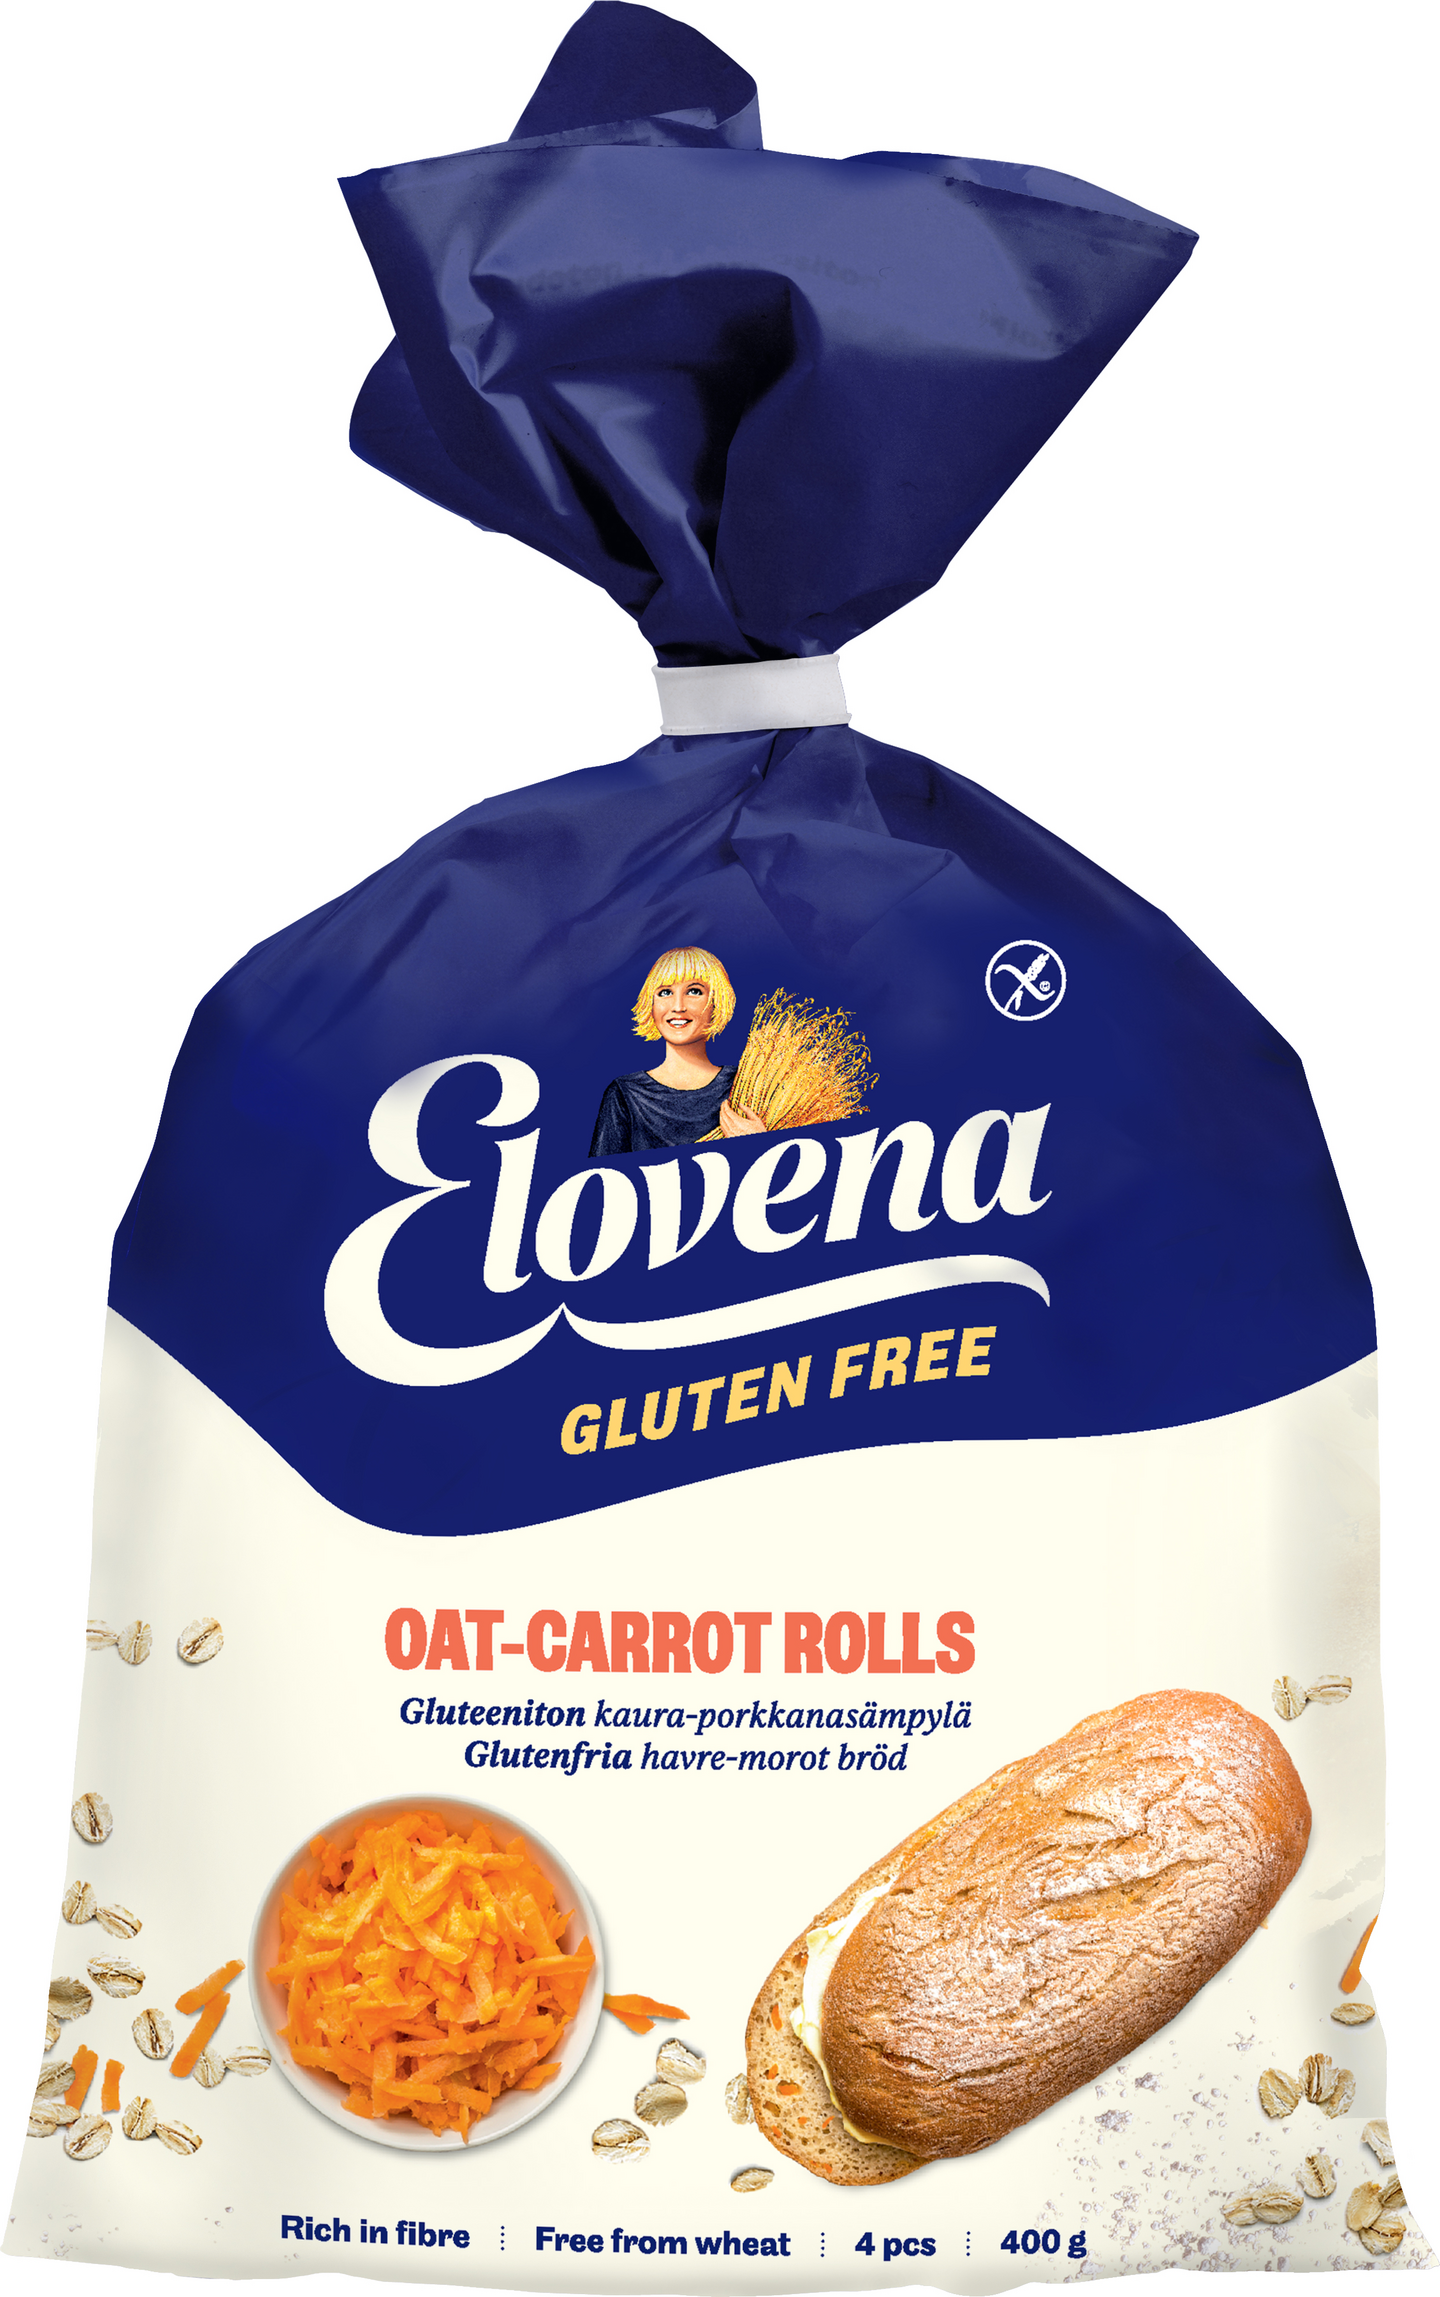 Elovena-Provena gluteenittomat kaura-porkkanasämpylät 400 g pakaste